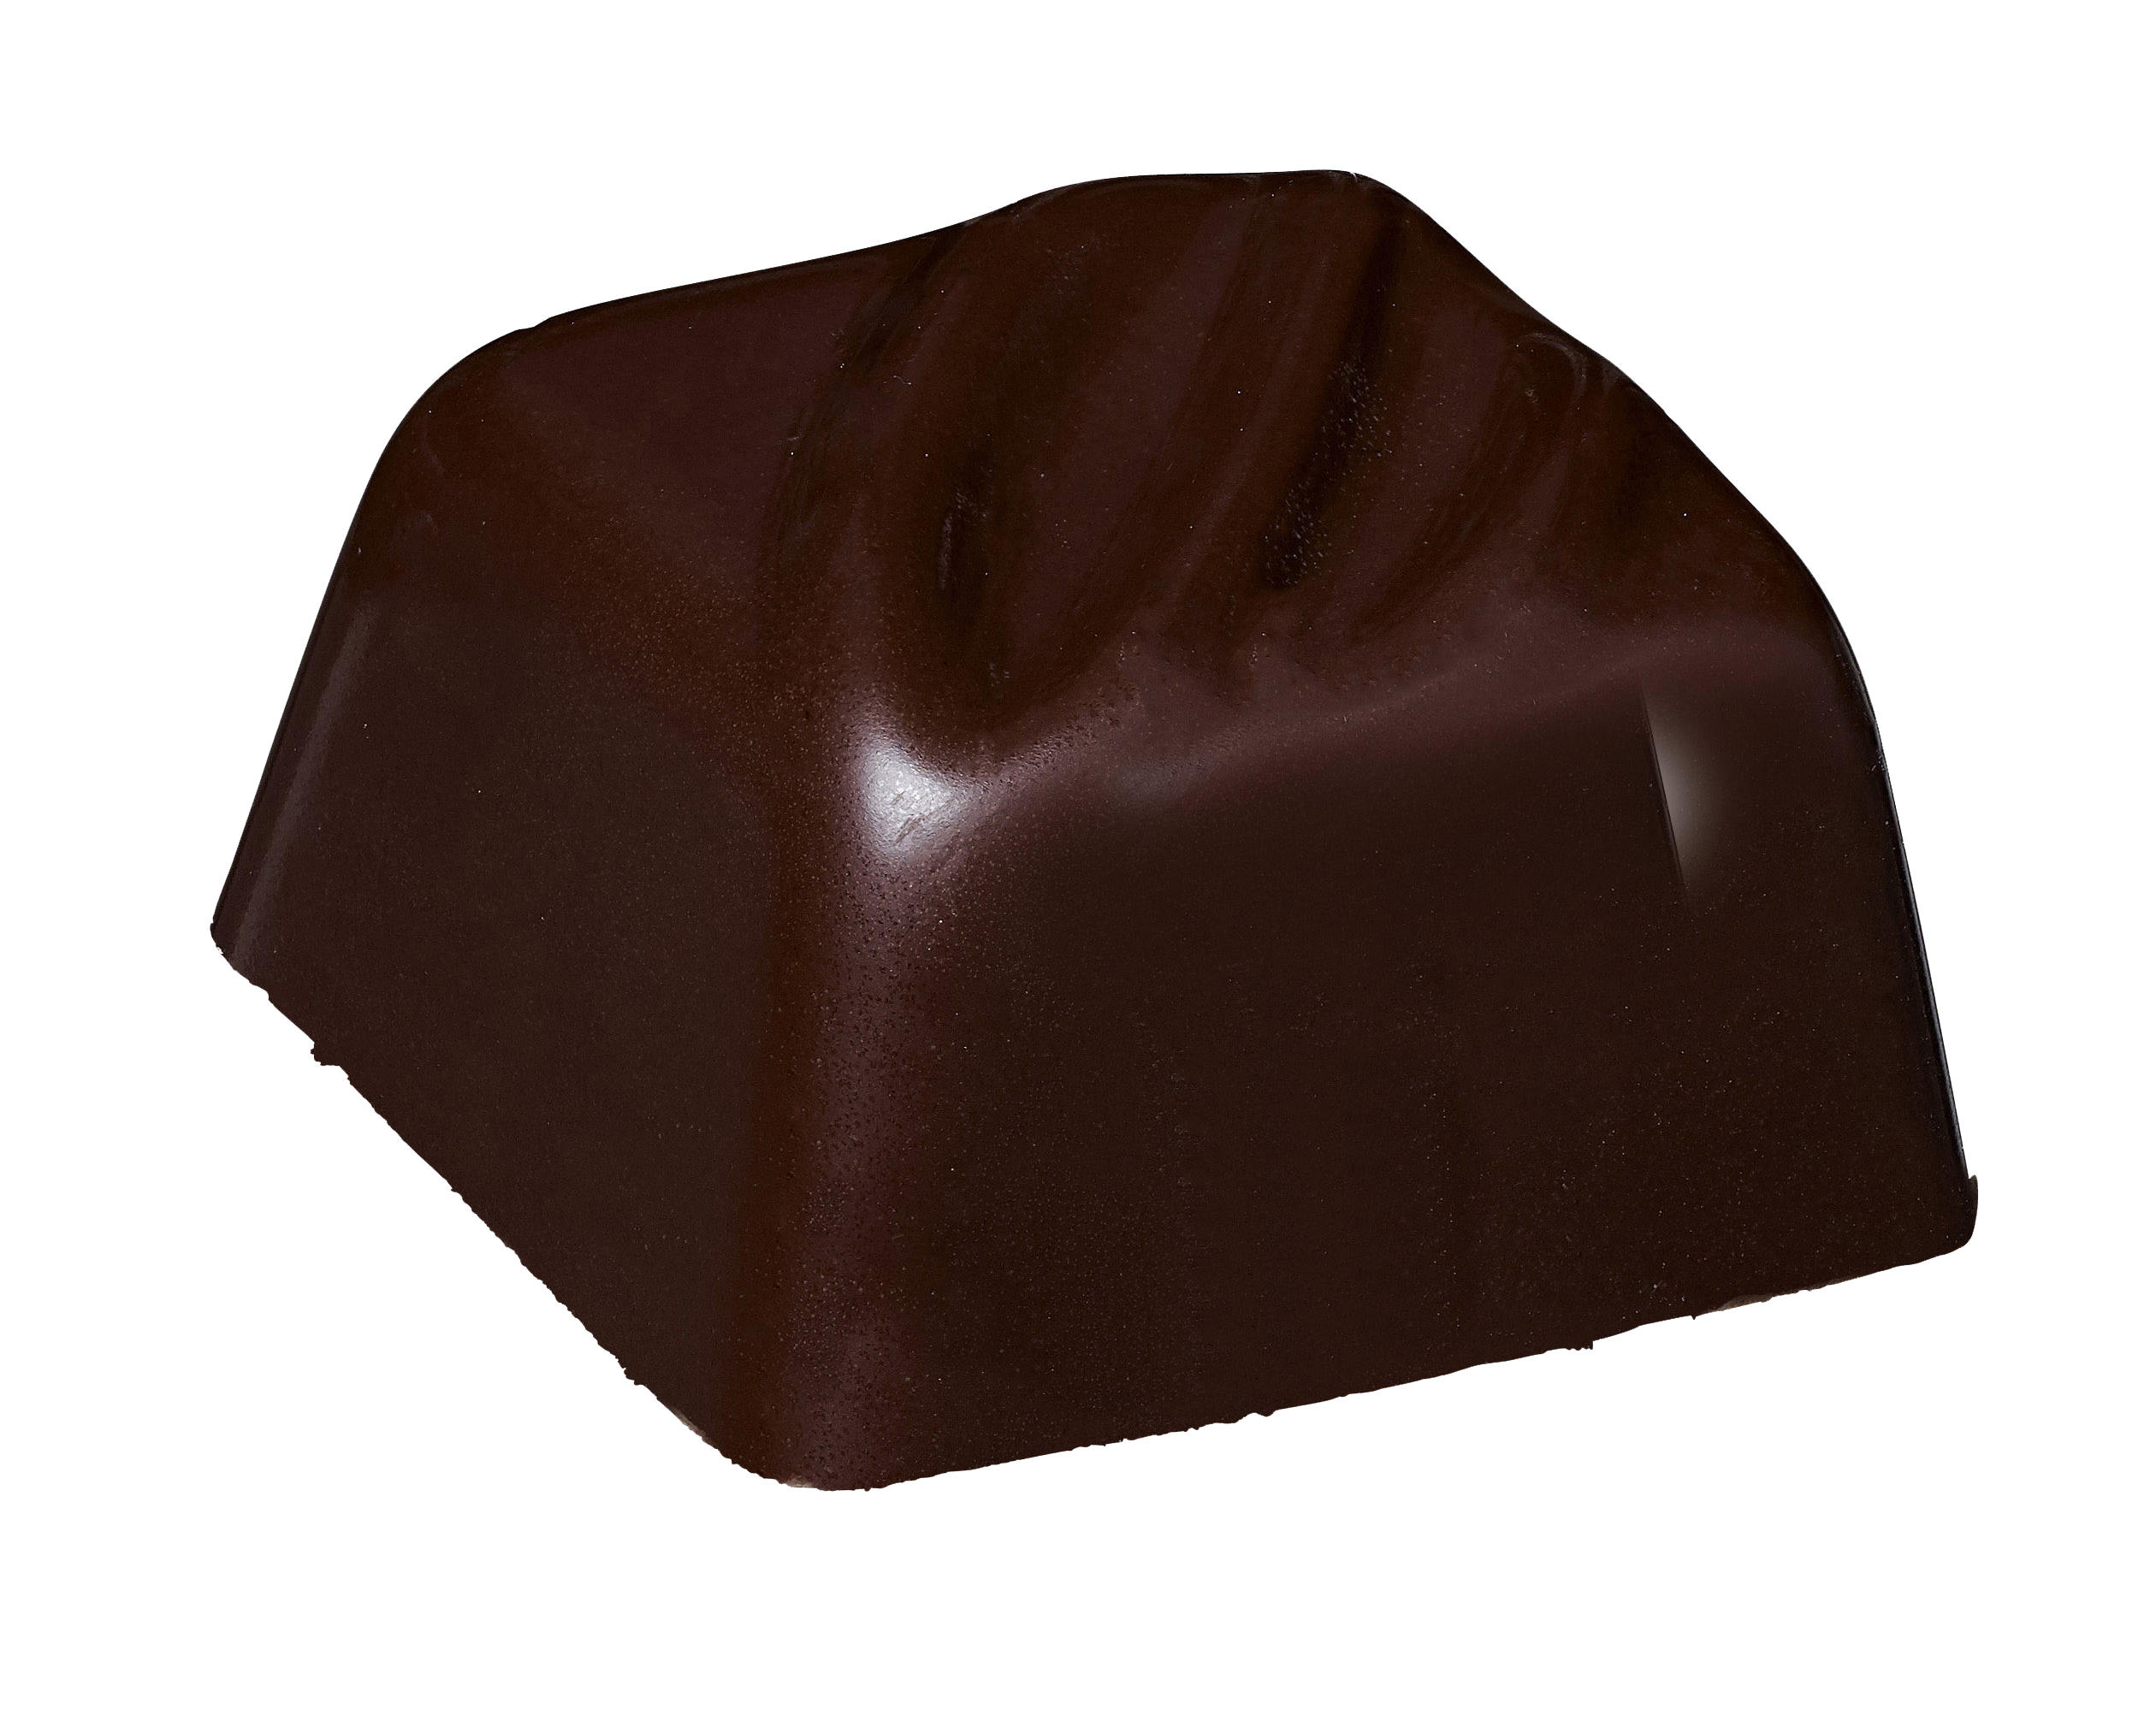 Belledonne Praliné amande café(enrobage noir 74%) bio 1kg - 002677